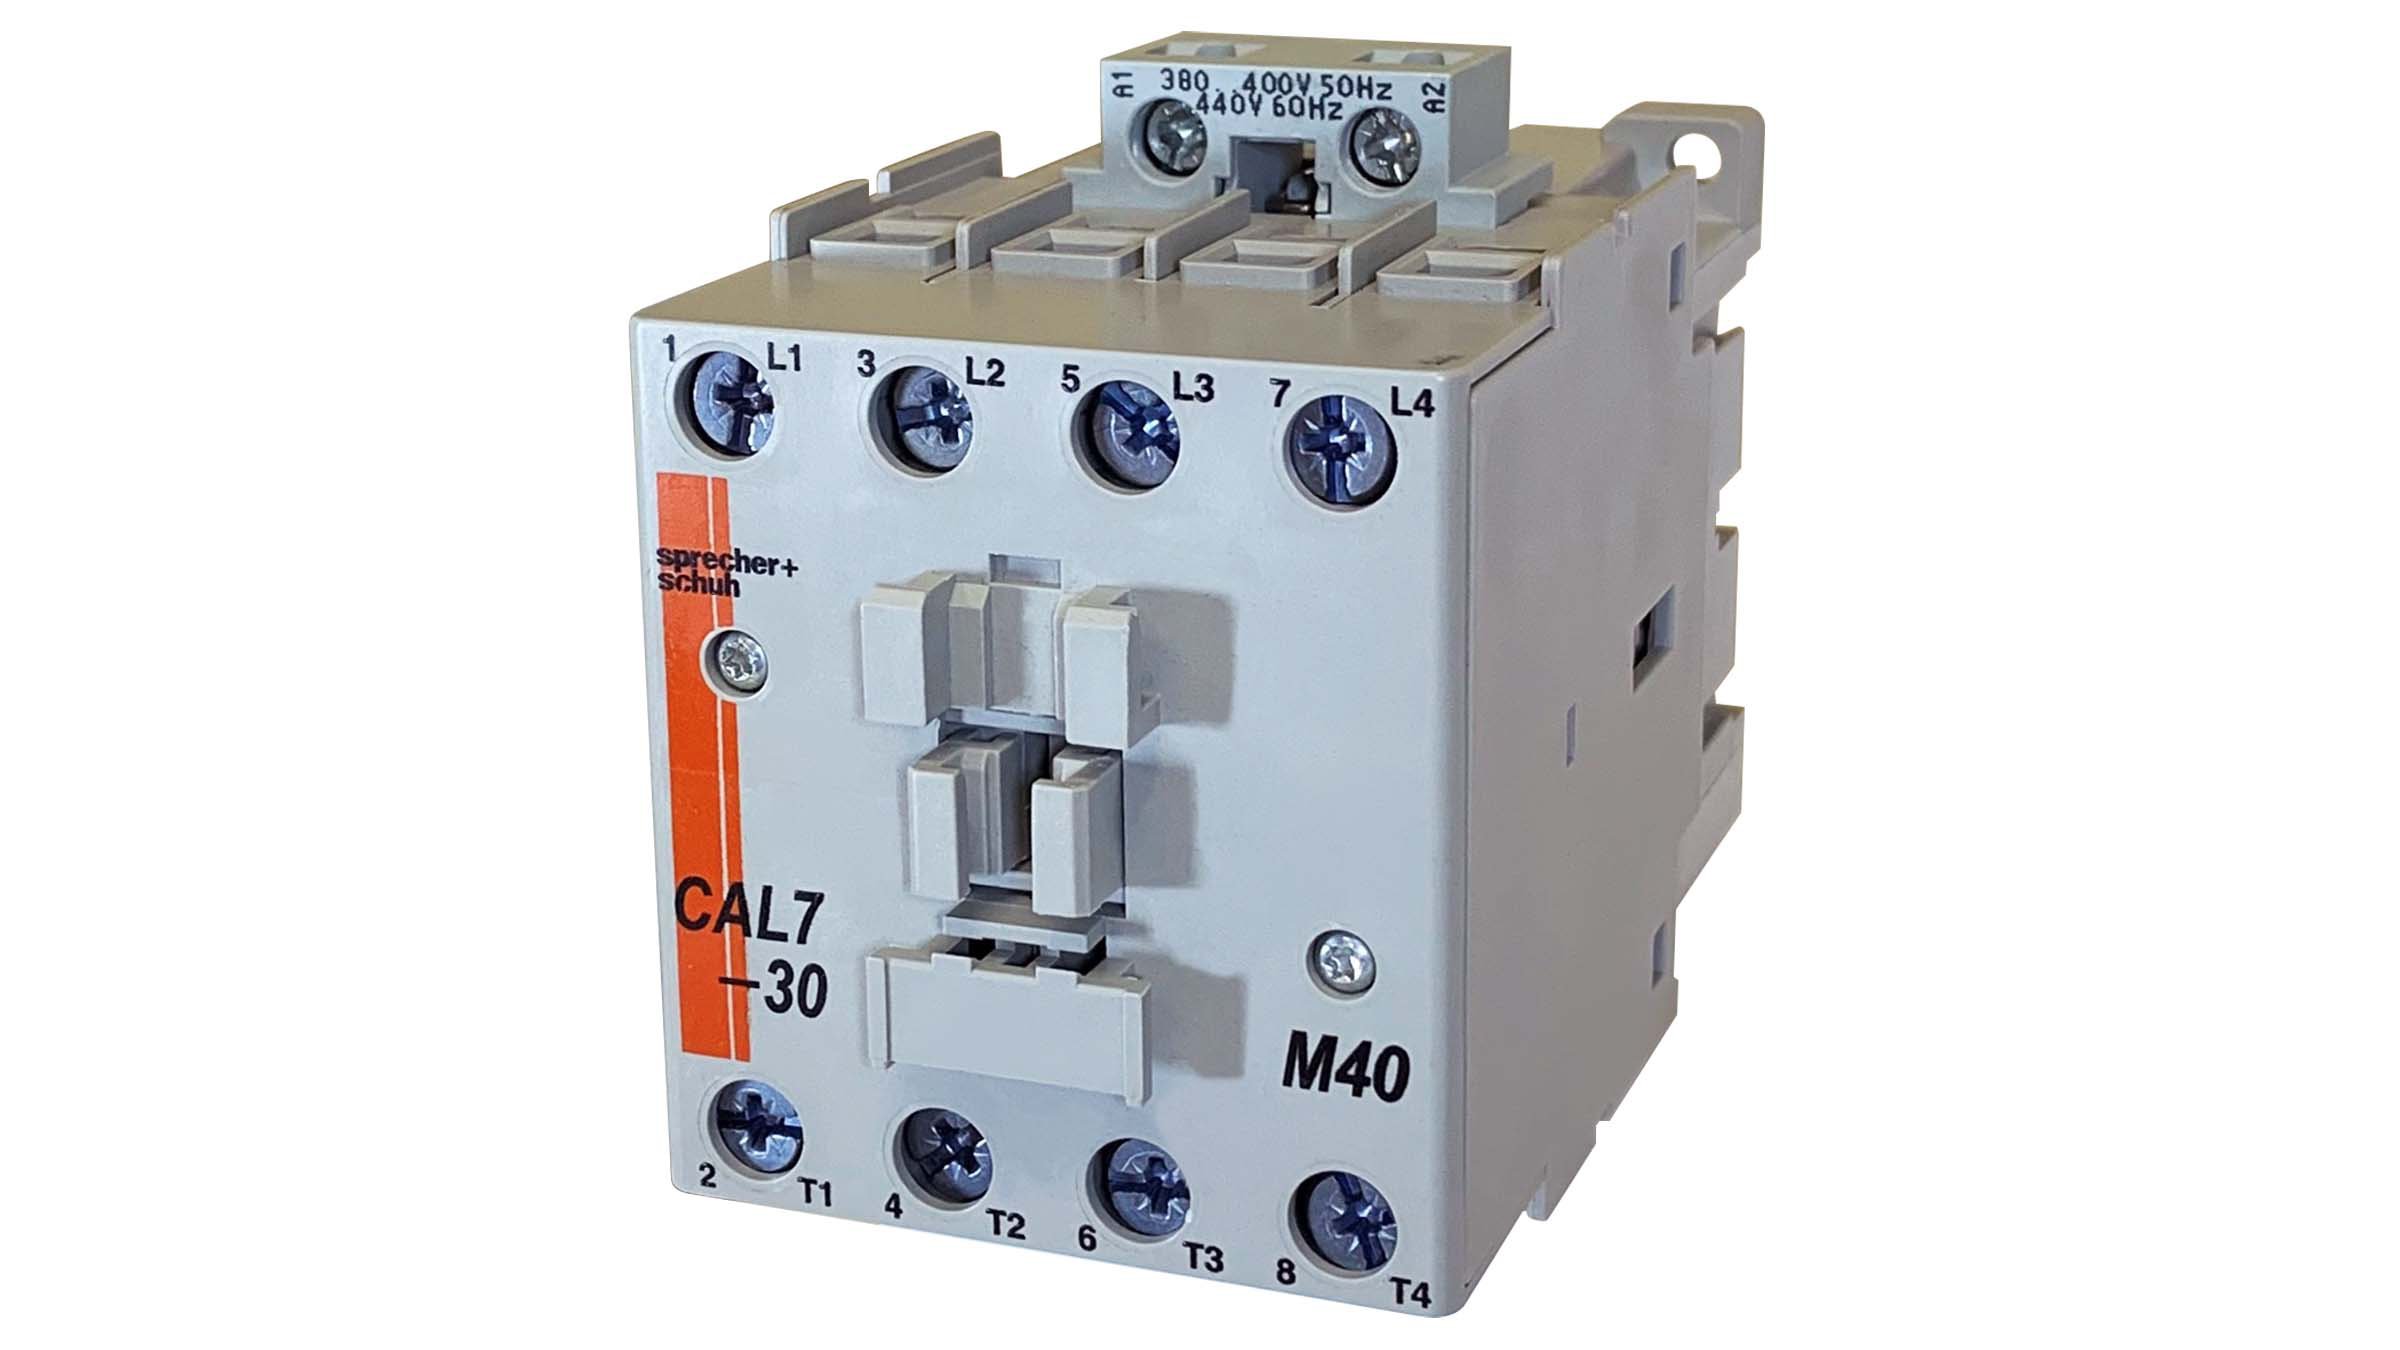 Sprecher & Schuh CAL7-30-M40 lighting contactor 